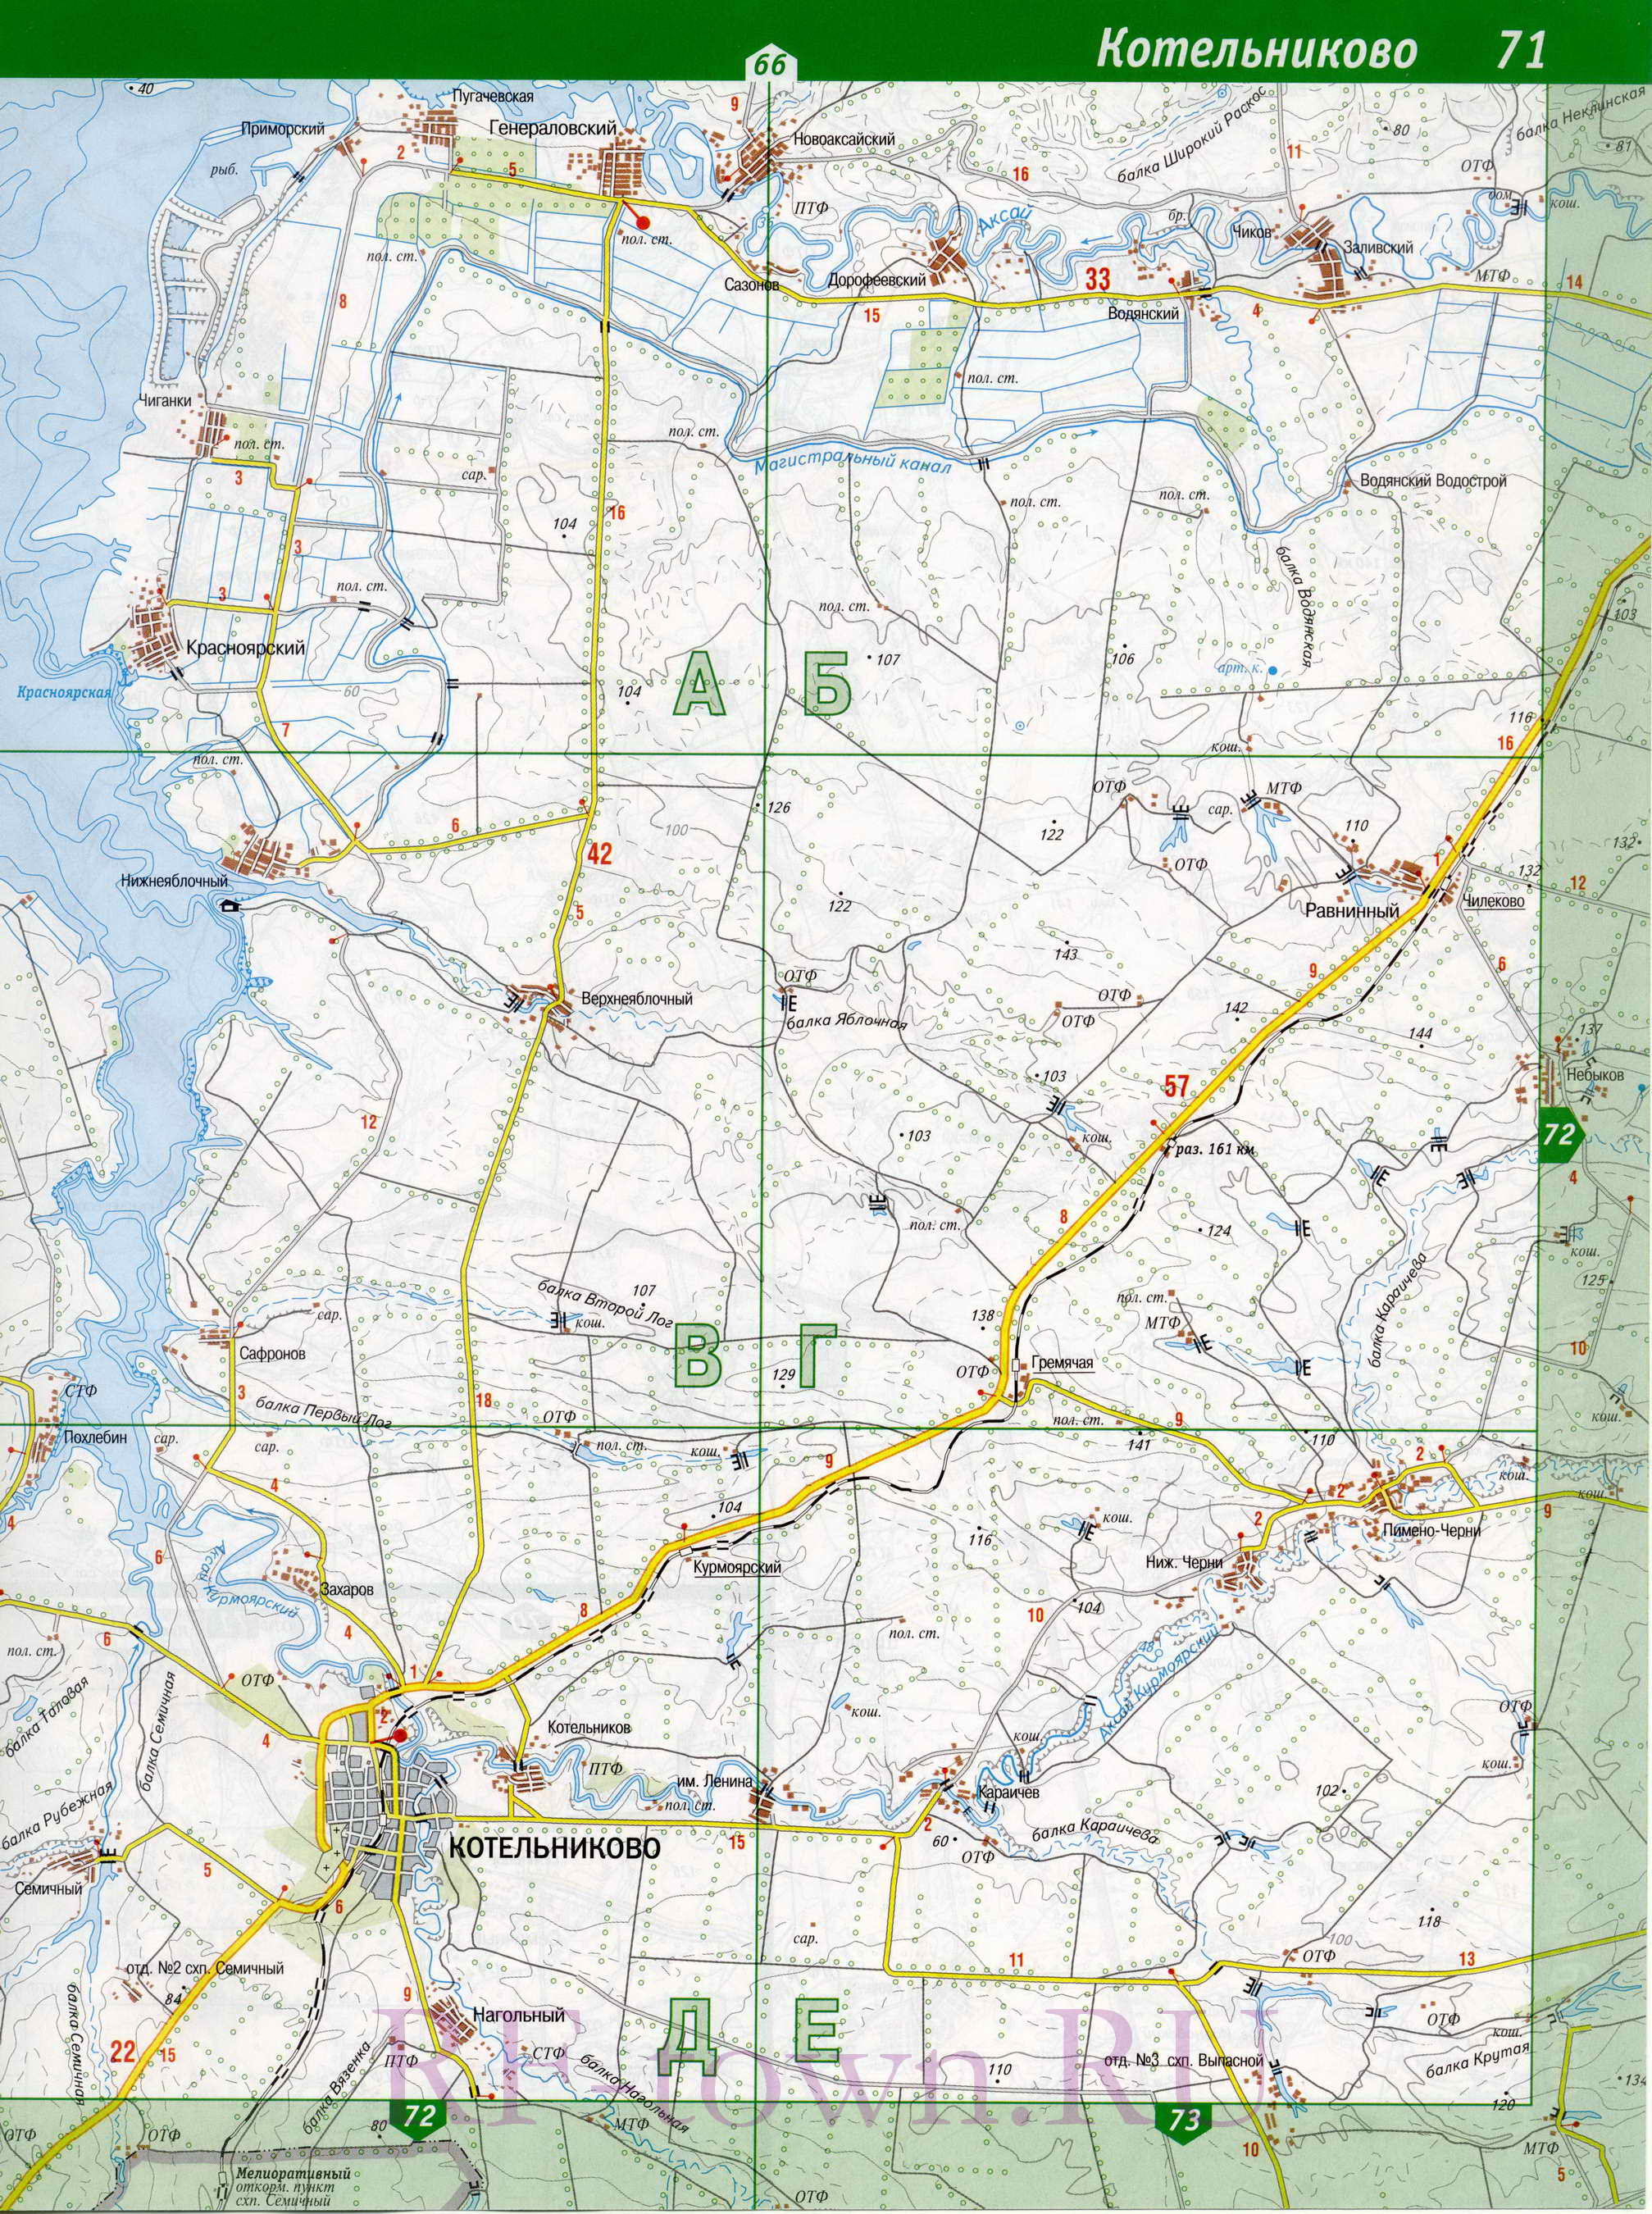 Карта Котельниковского района. Карта автомобильных дорог Котельниковский район Волгоградской области, B0 - 